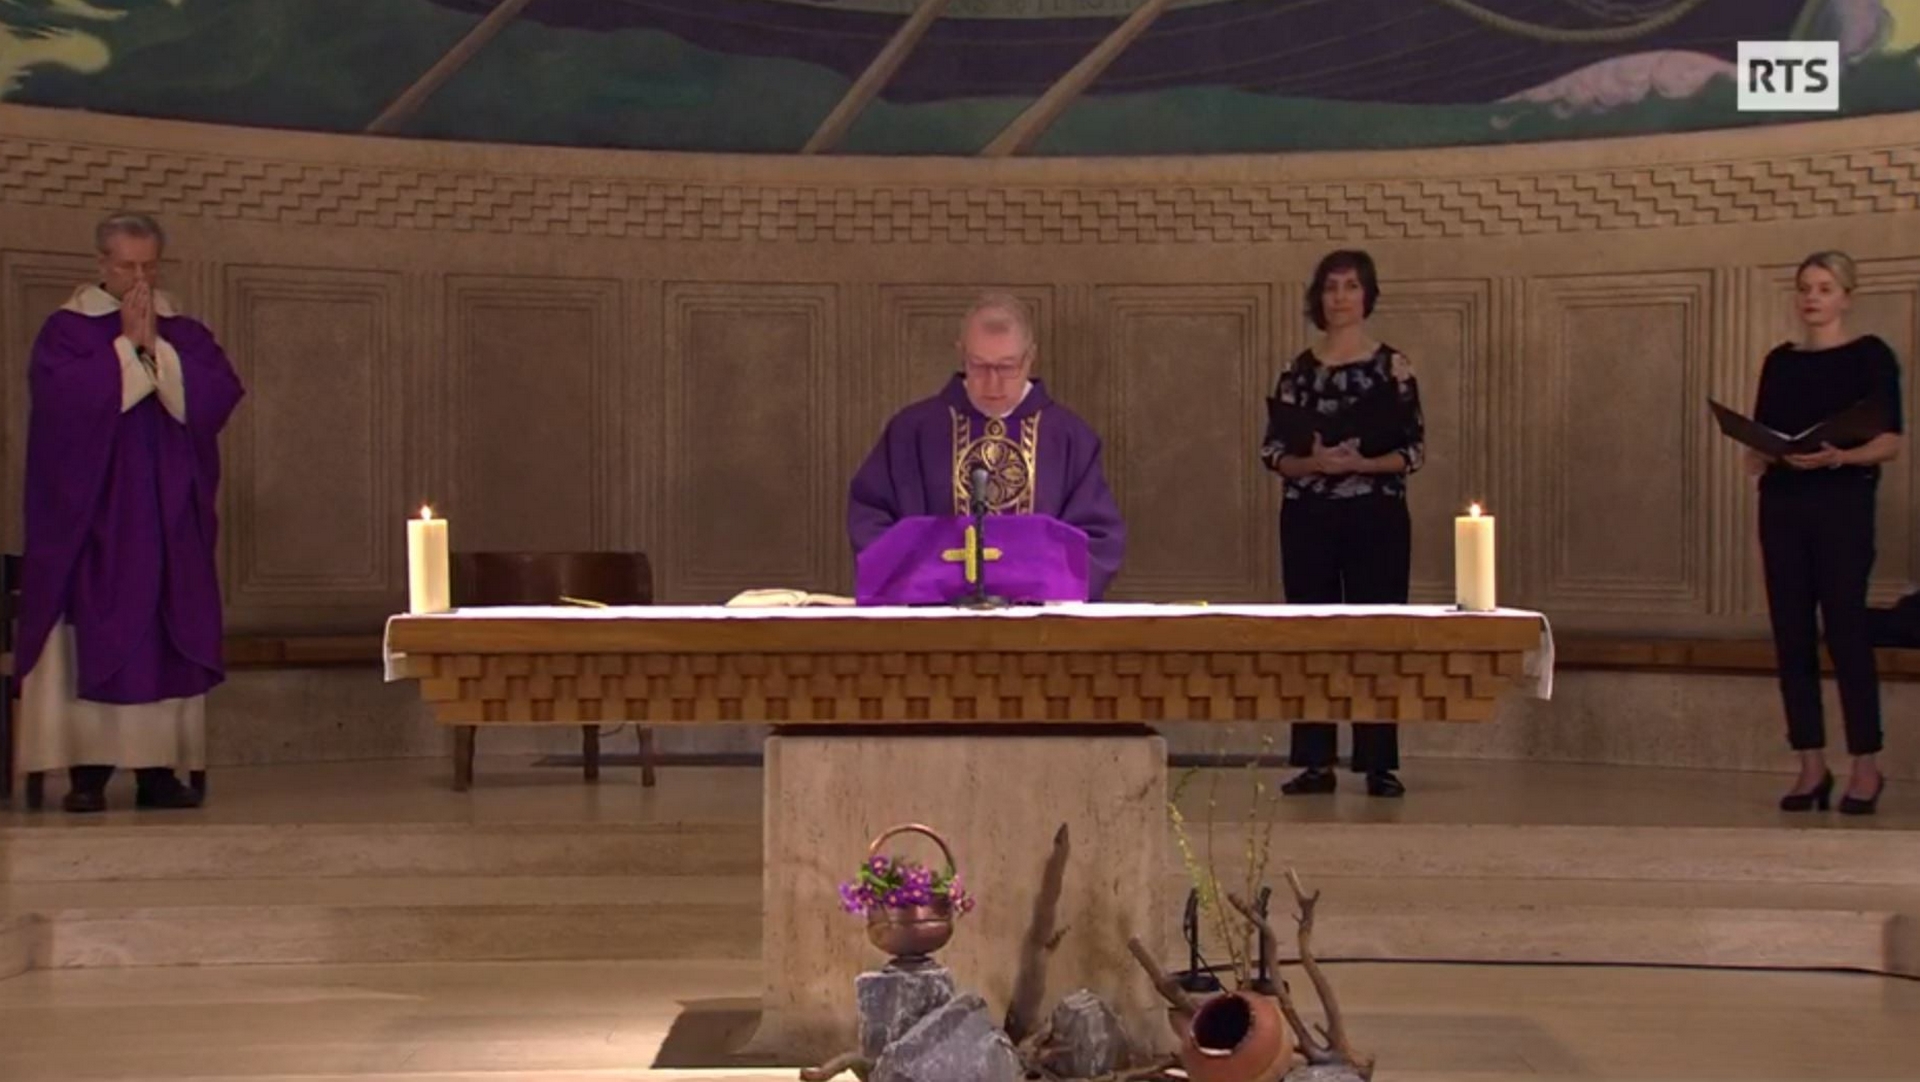 Messe de Carême à l'église St-Paul de Cologny | capture d'écran RTS2